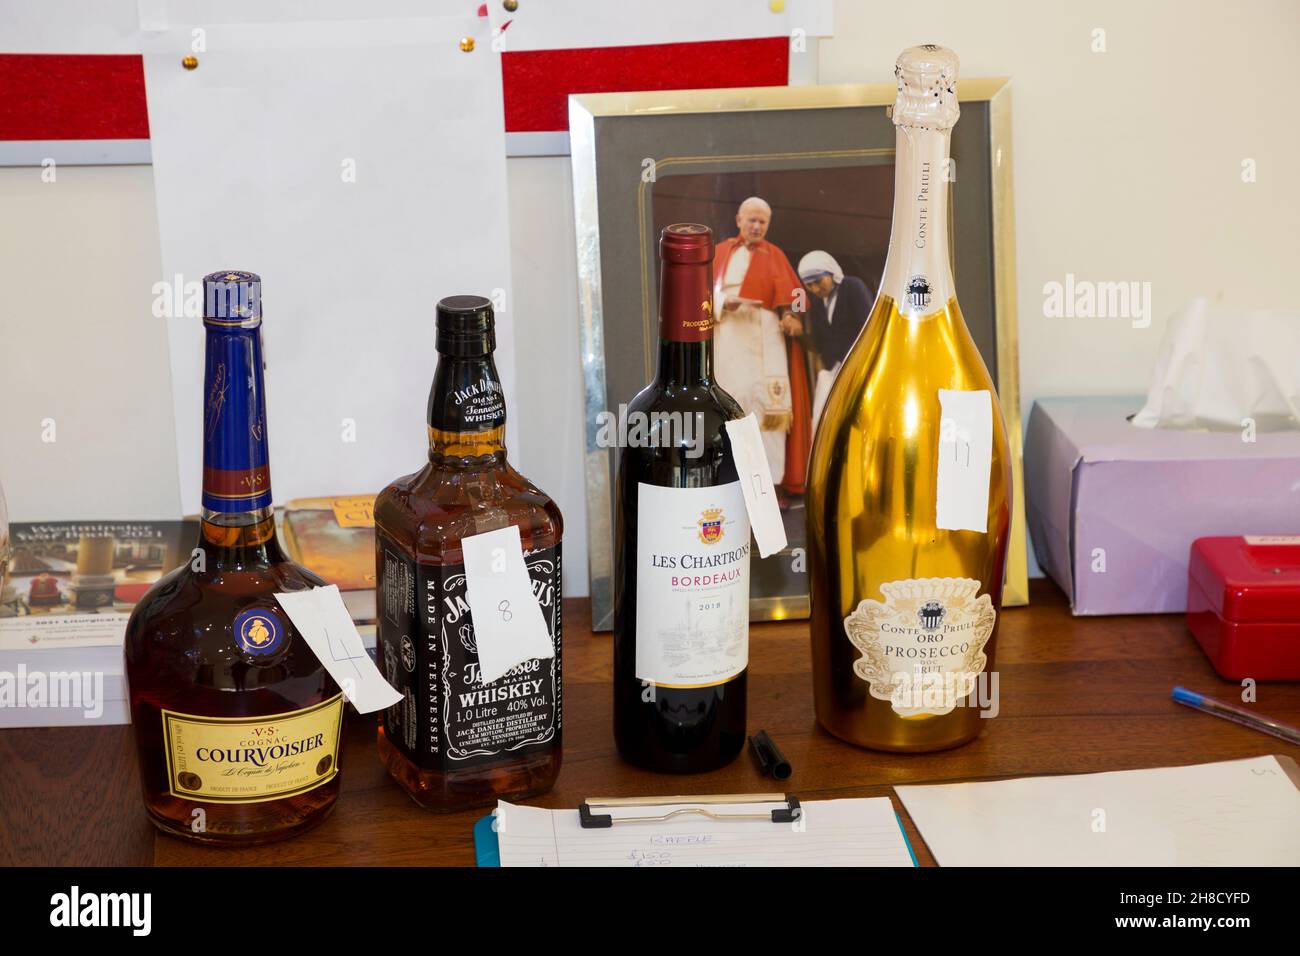 Tombola lors d'un événement de collecte de fonds dans une église catholique.ROYAUME-UNI.Bouteilles  d'alcool comprenant une bouteille de whisky, de brandy Courvoisier, de  Prosecco et un prix de vin rouge.(127 Photo Stock -